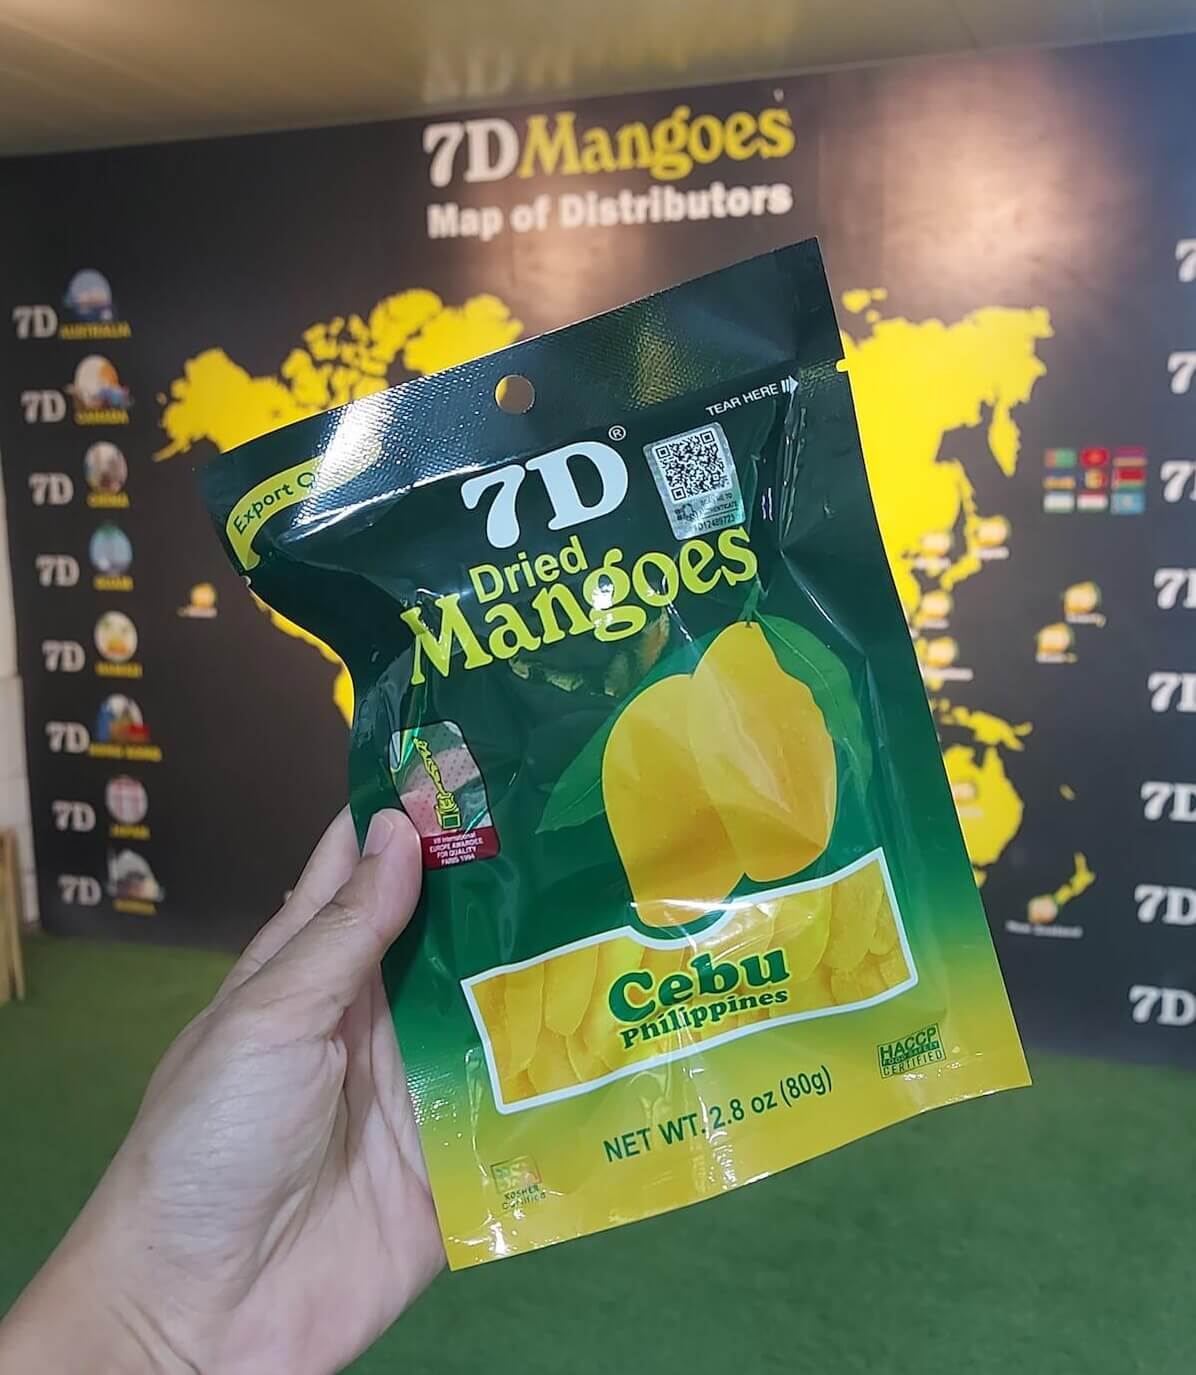 7D Mangoes